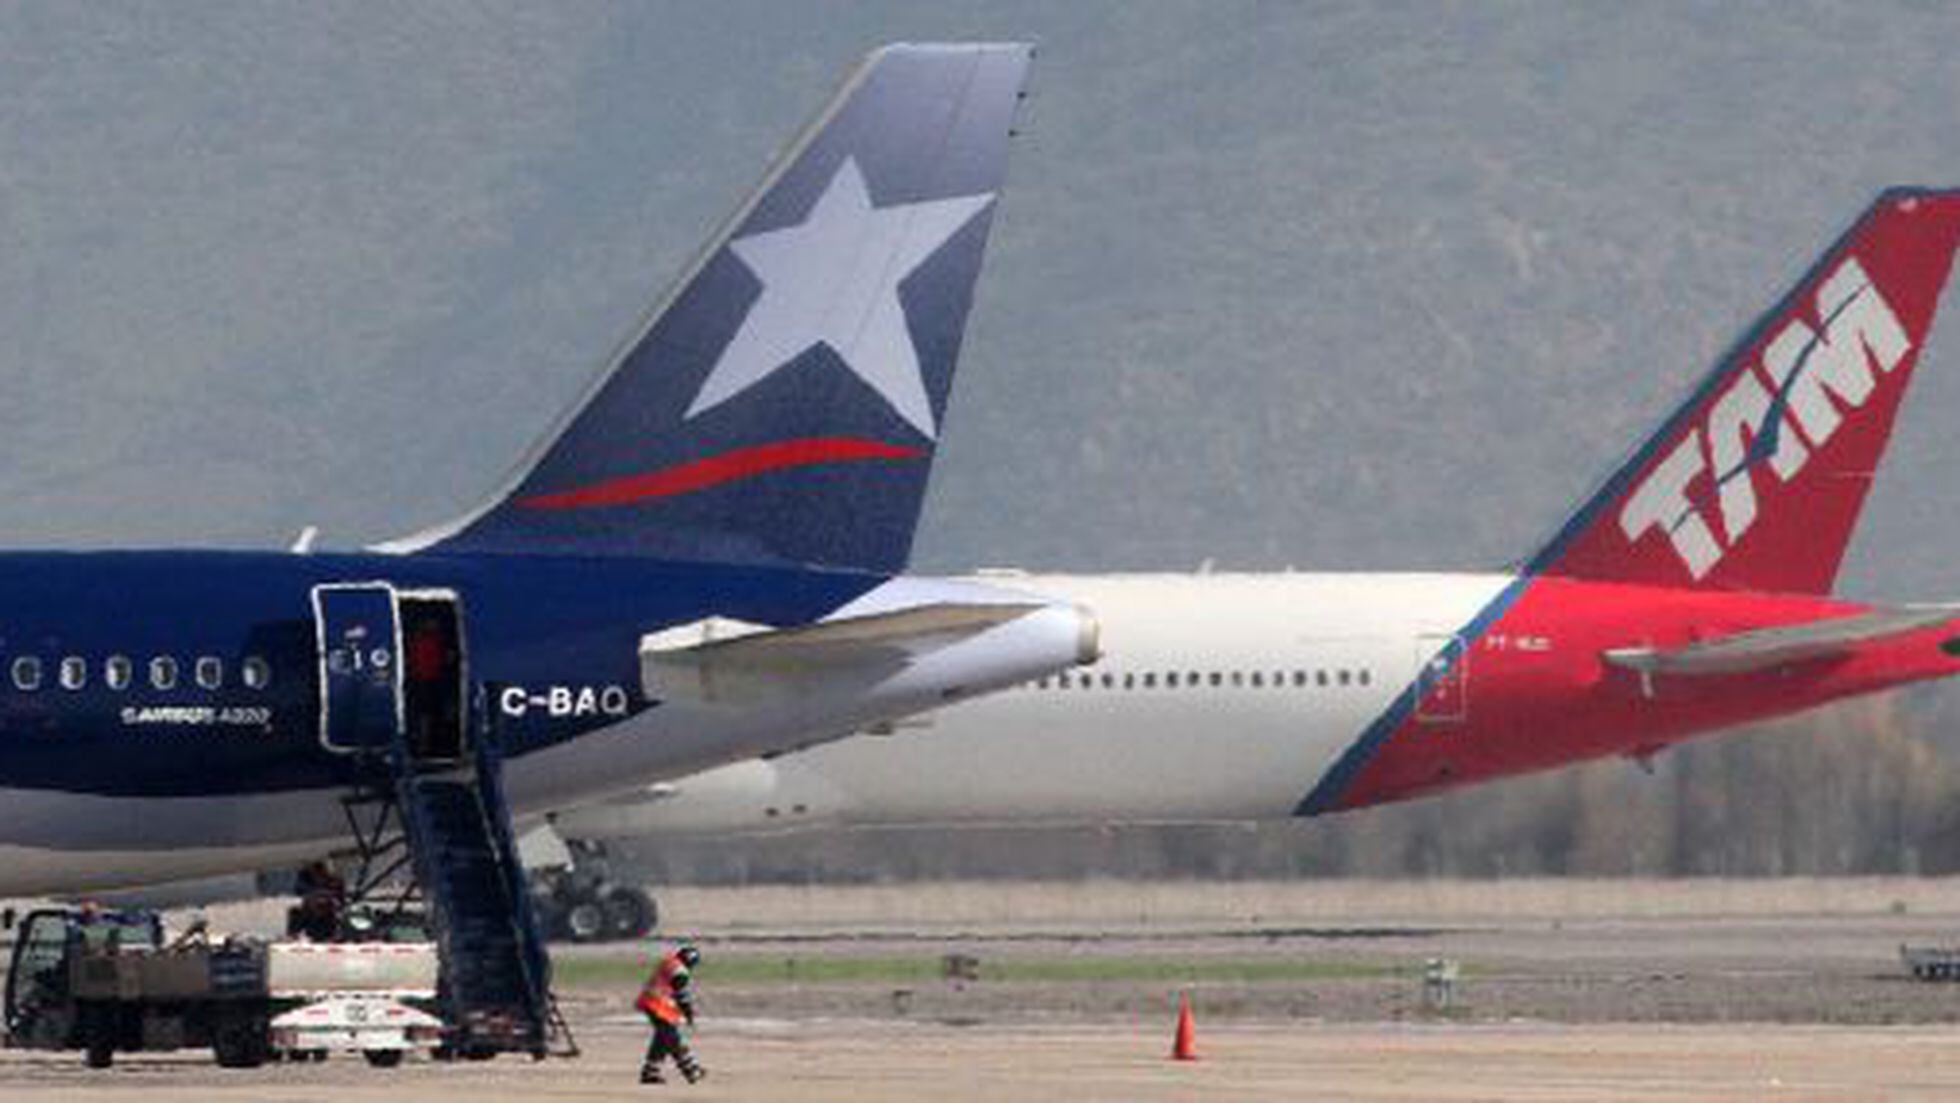 A linha aérea Latam reduz em 46% seu prejuízo em 2013, Economia